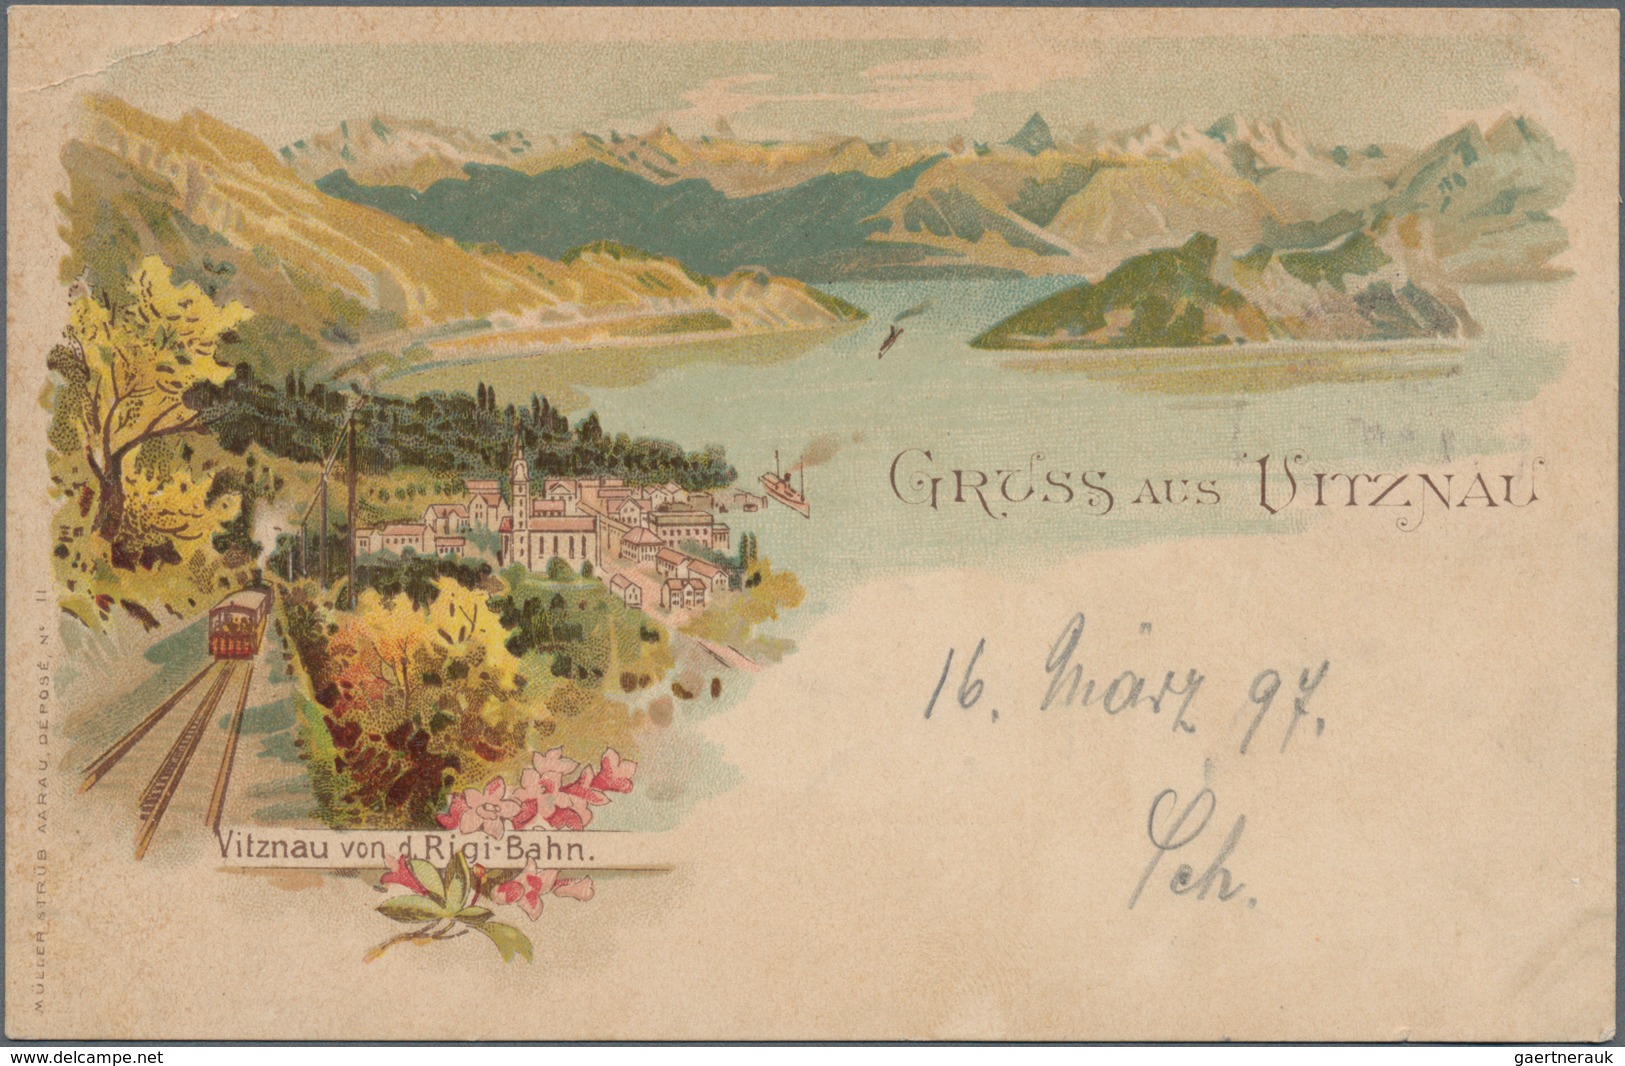 Schweiz: 1840er-1940er: Rund 230 Briefe, Postkarten, Ganzsachen und Ansichtskarten der Schweiz, dabe